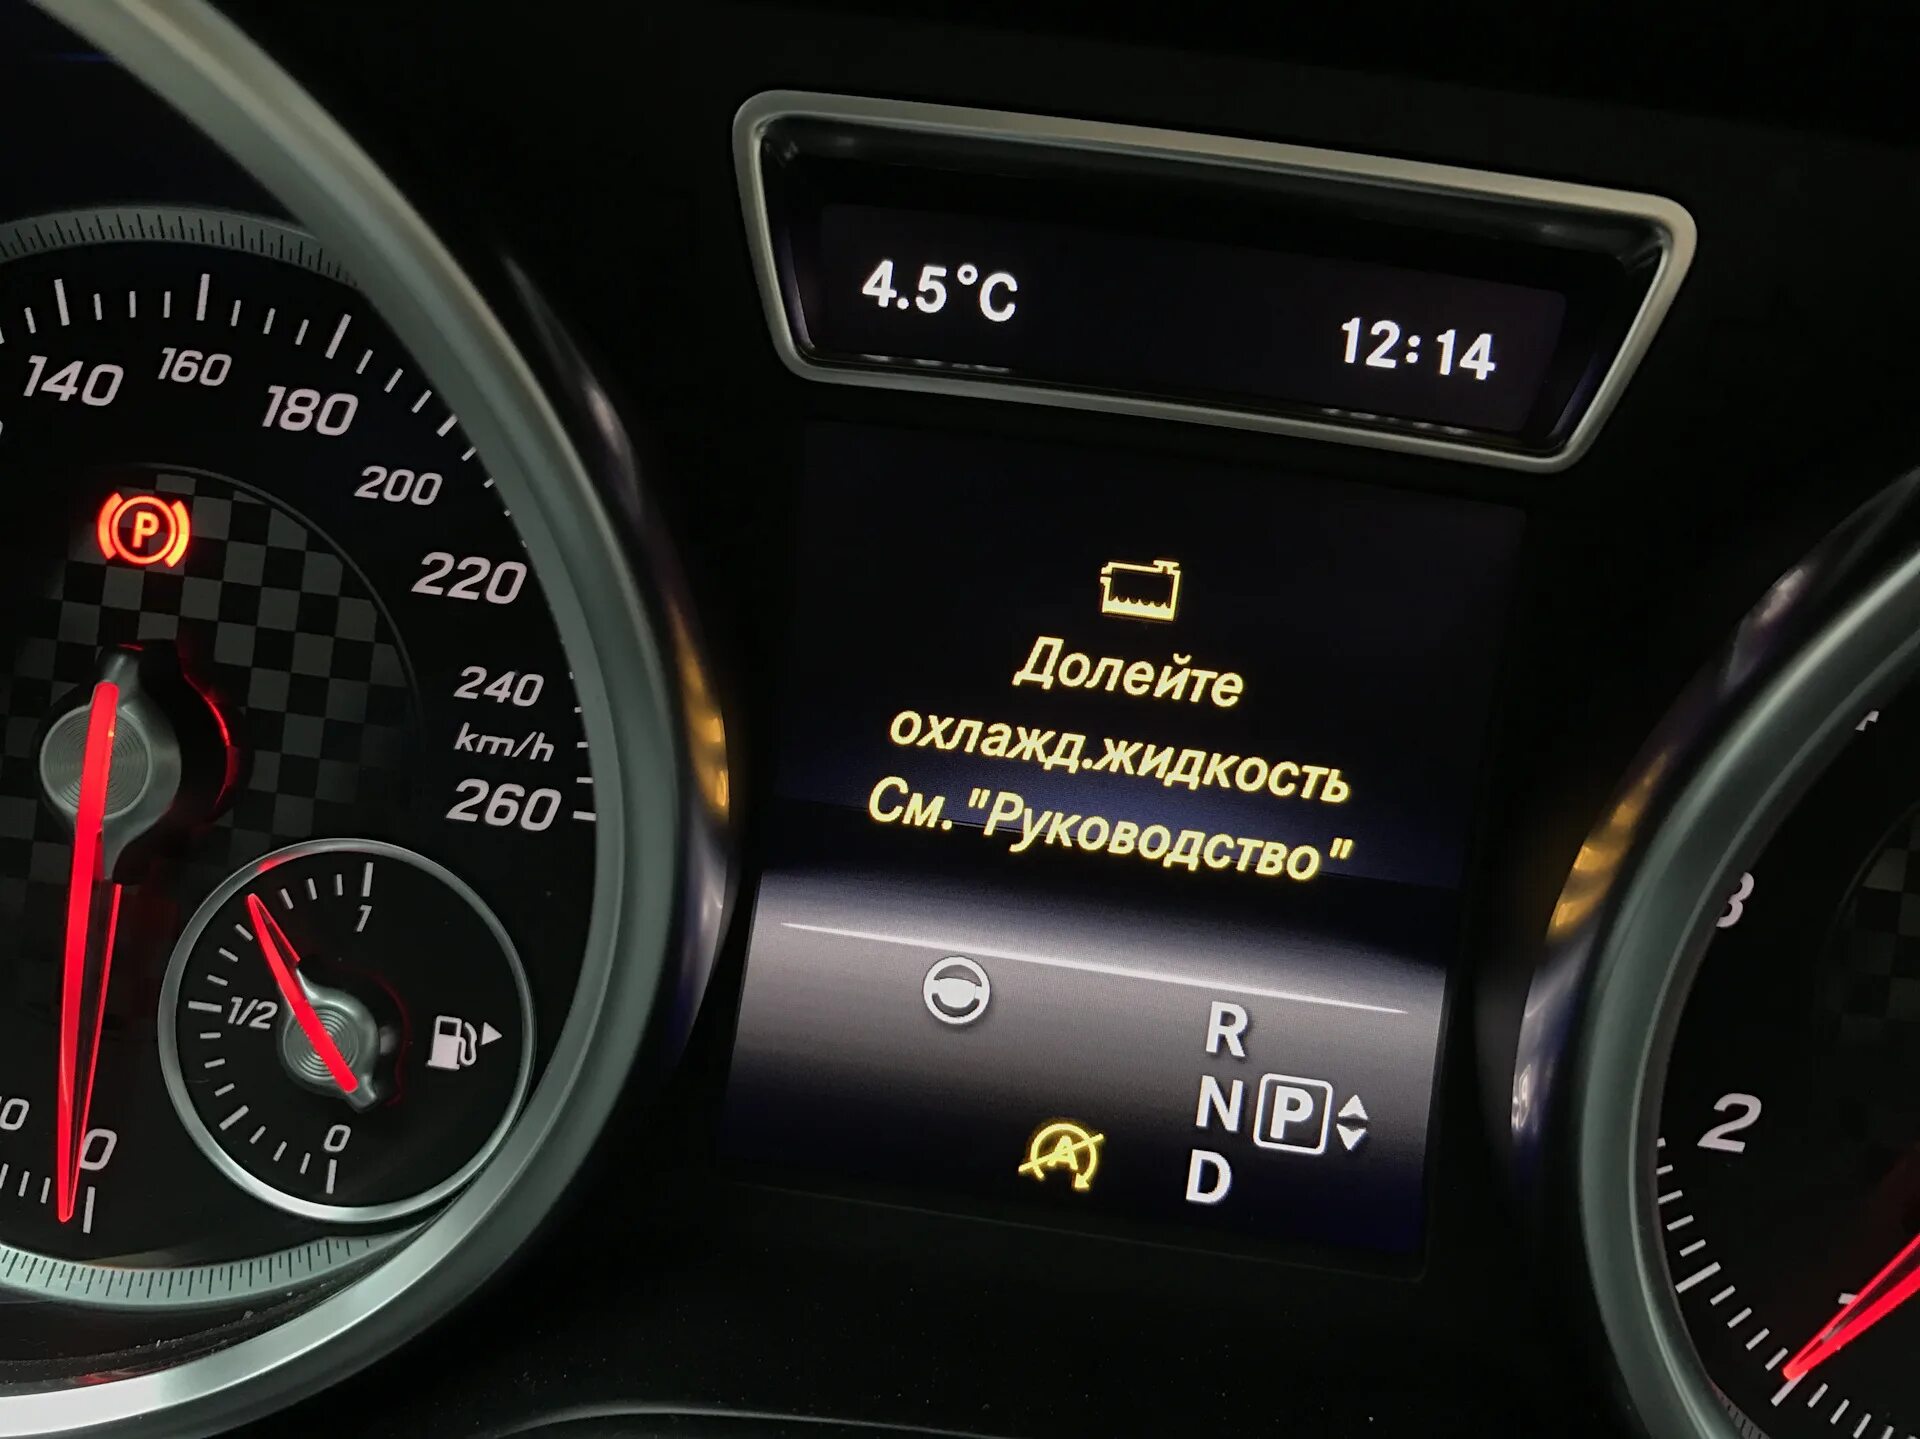 Ошибка температура масла. Mercedes-Benz c 200 охлаждающая жидкость. Mercedes Benz gl 350 2016 долейте охлаждающую жидкость. Индикатор уровня охлаждающей жидкости w222. Долейте охлаждающую жидкость Мерседес w204.